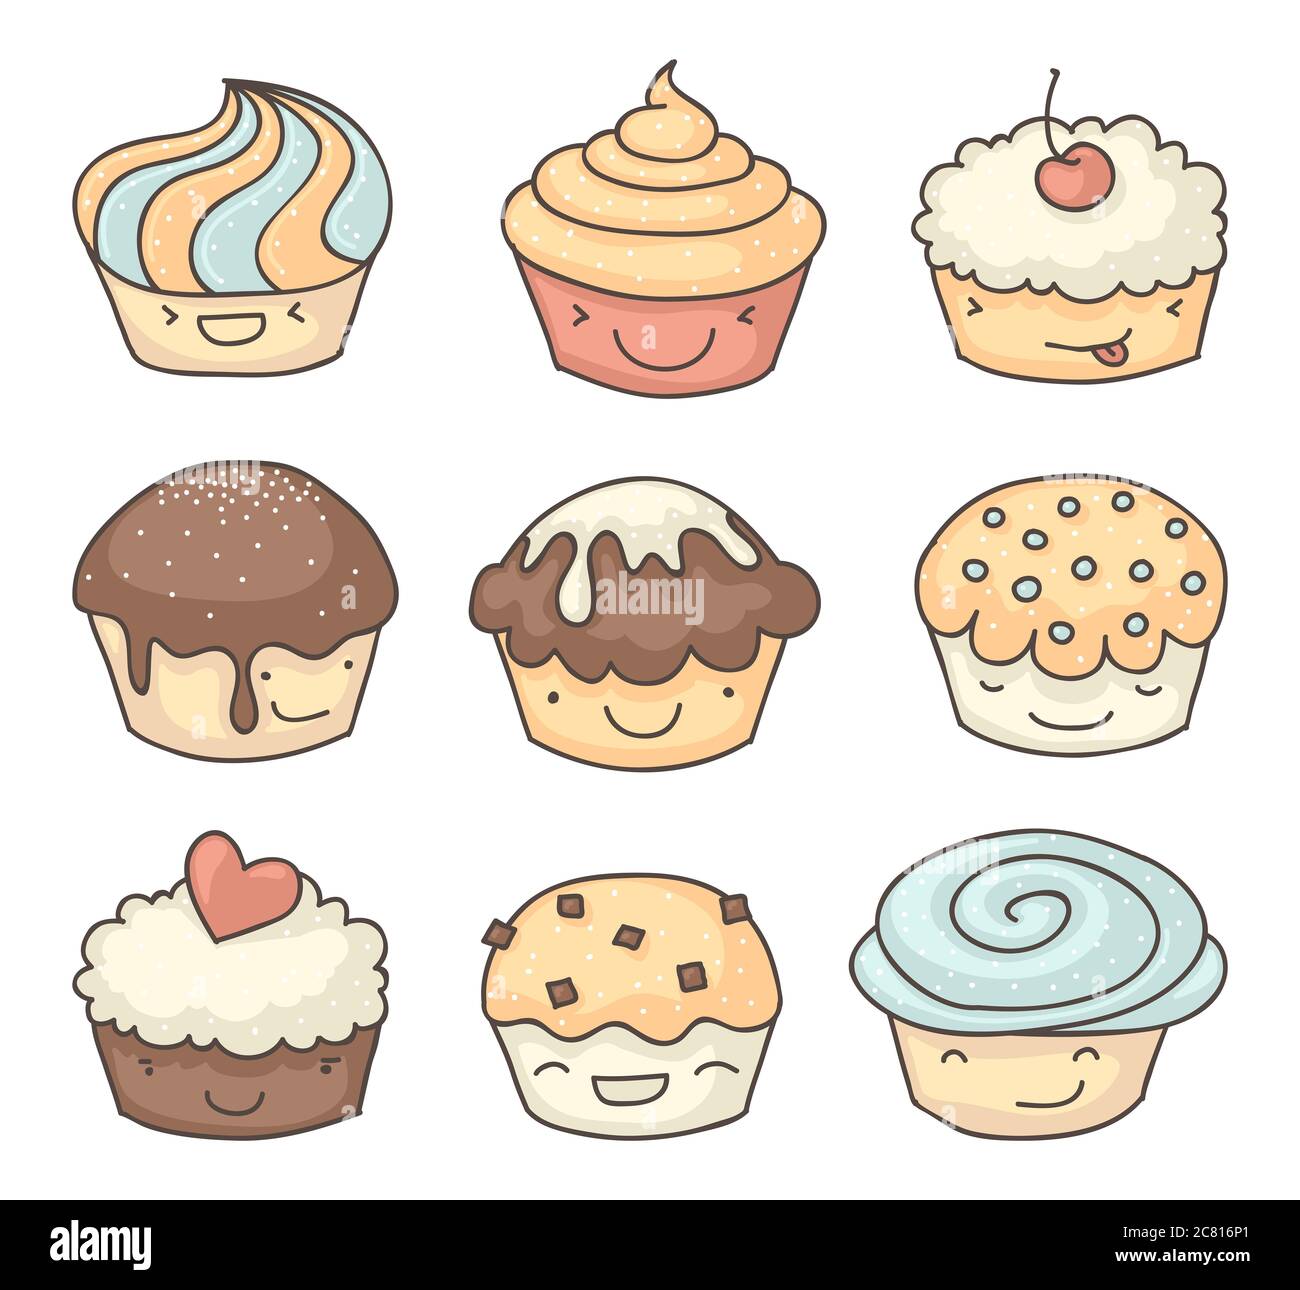 Smiling cupcakes muffins ou dessins enfantins collection. Chacun avec des expressions du visage. Banque D'Images